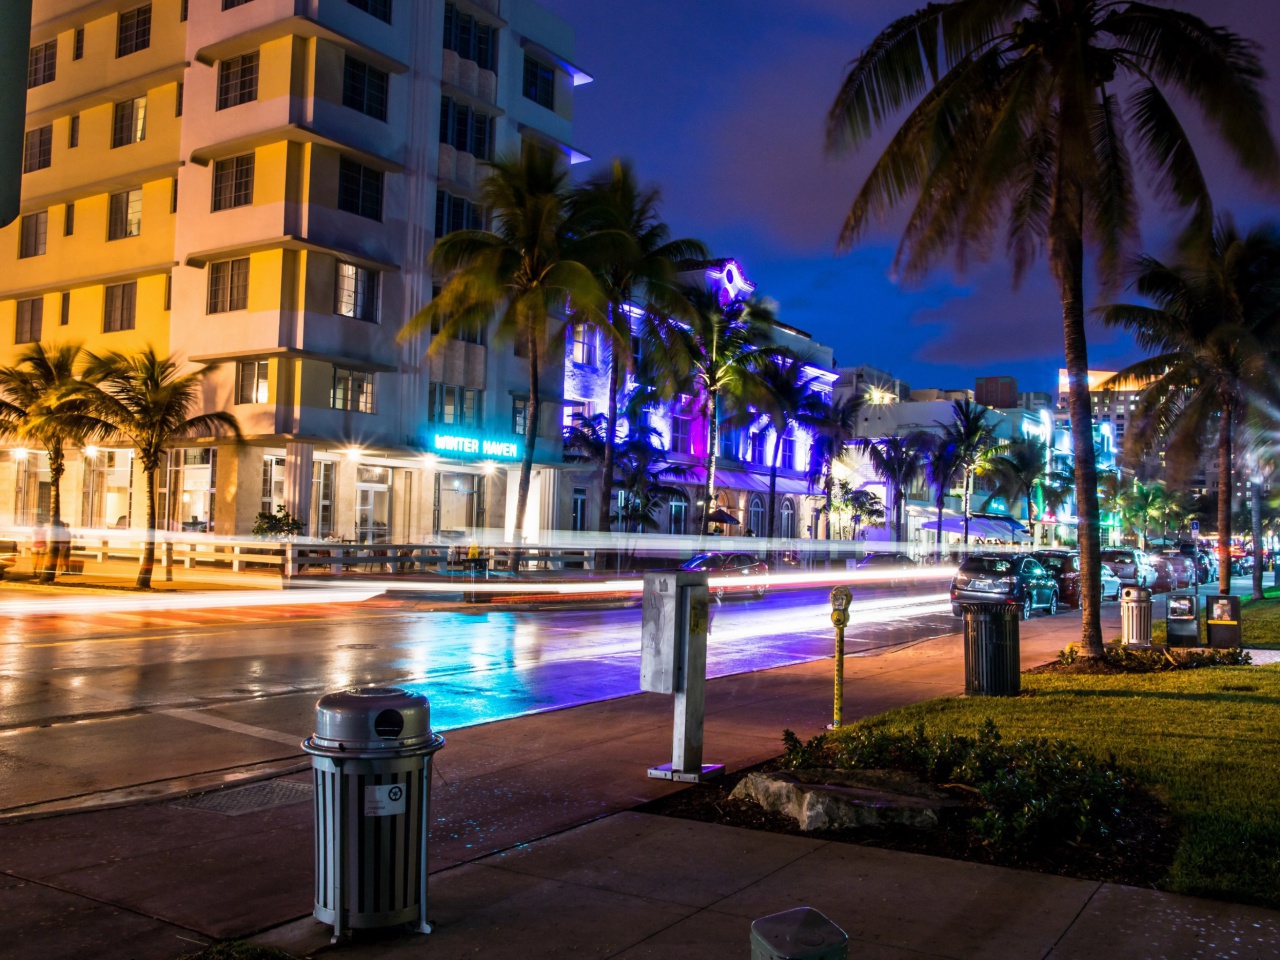 Florida, Miami Evening screenshot #1 1280x960